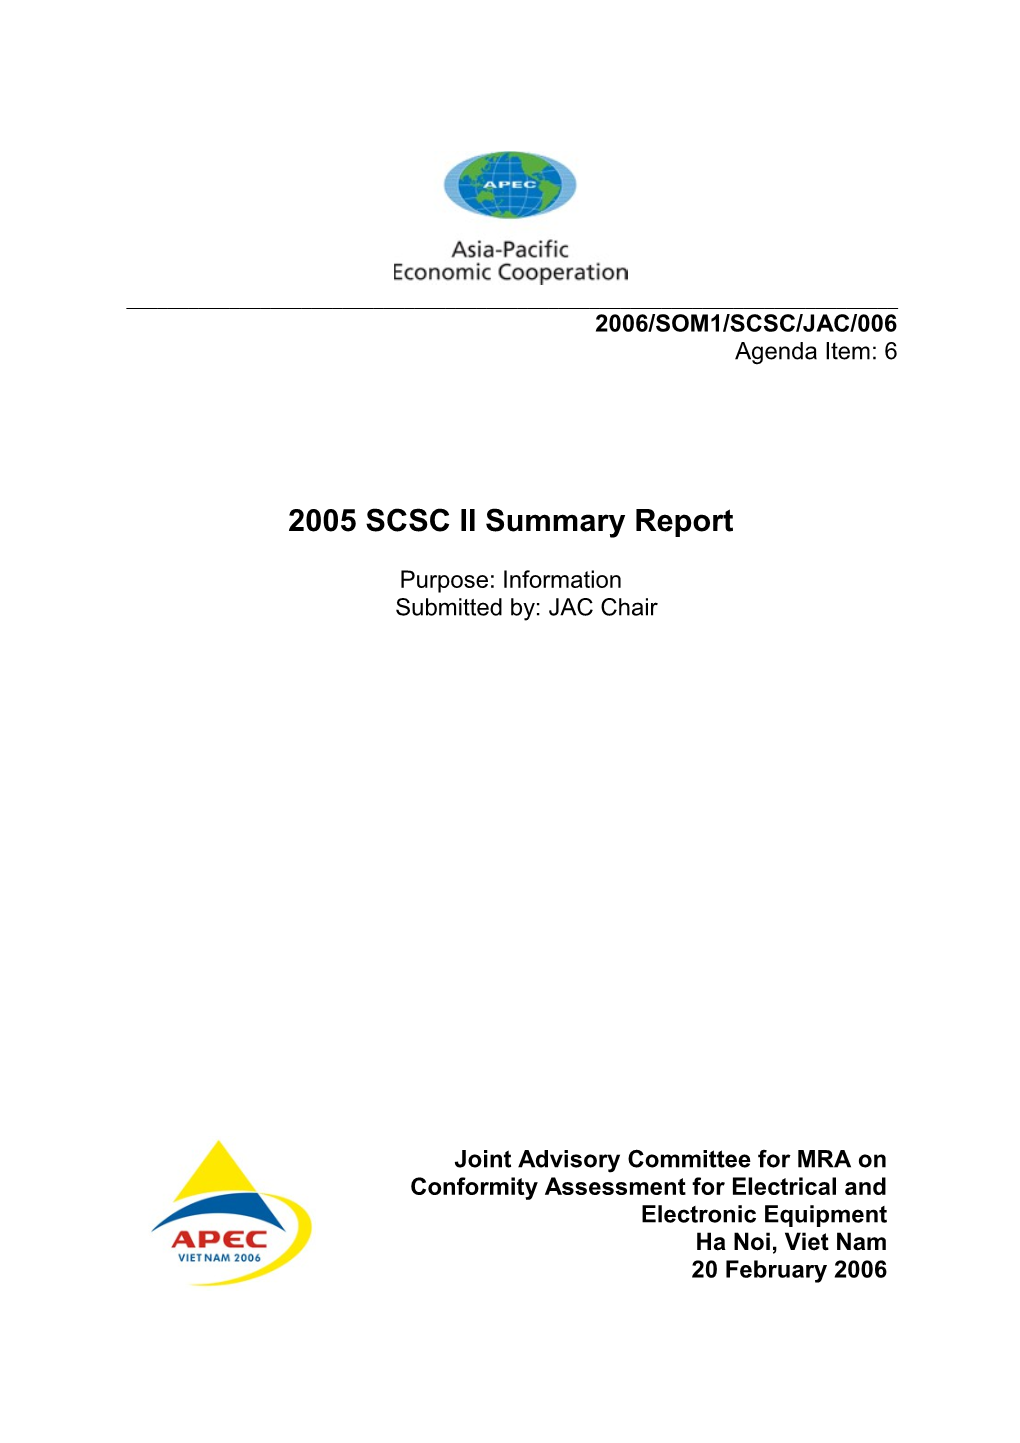 2005 SCSC II Summary Report